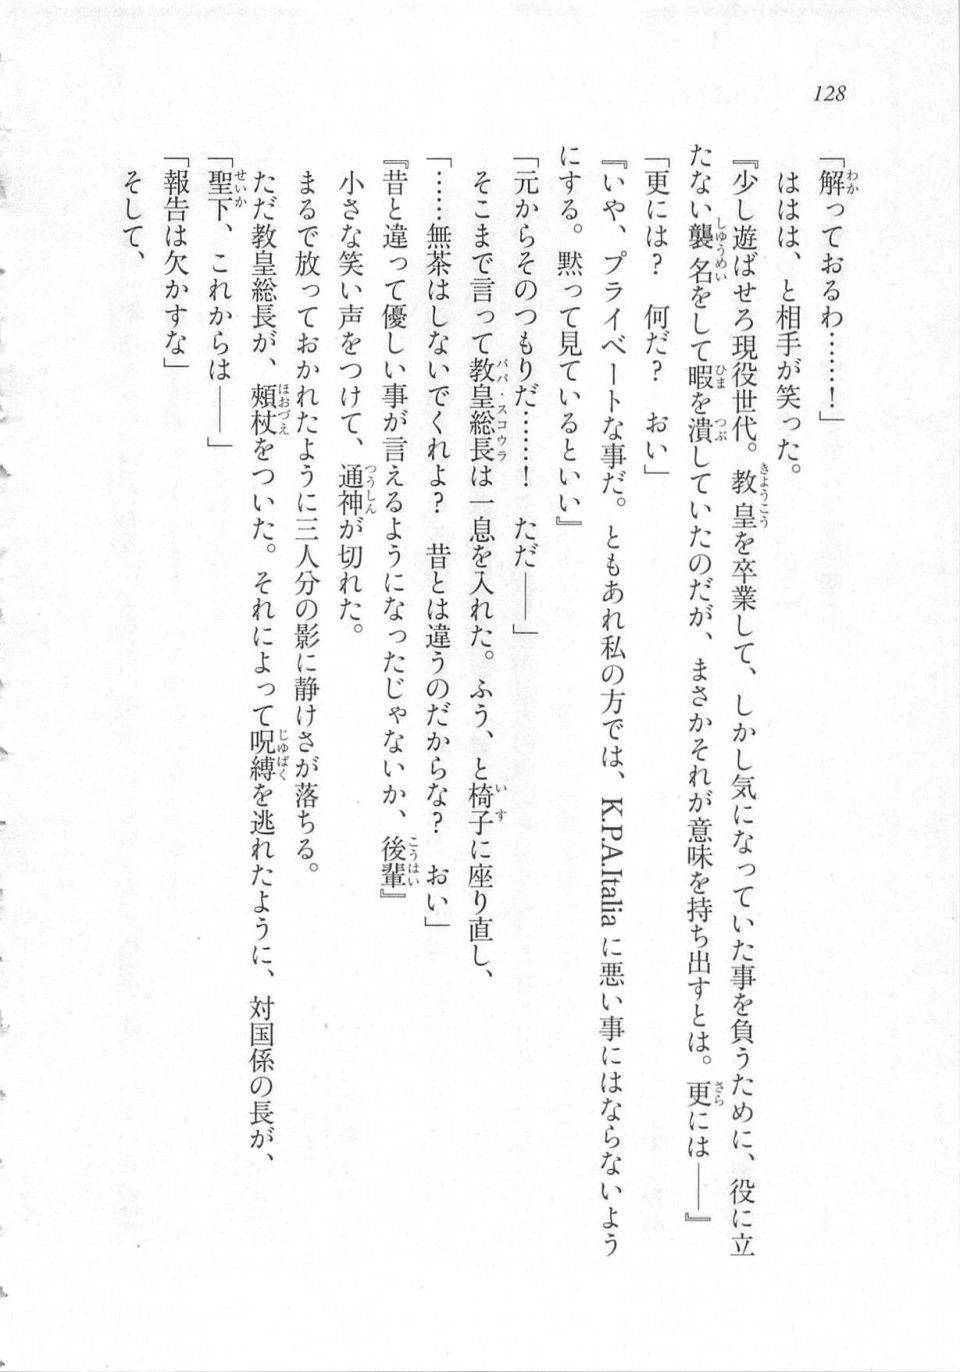 Kyoukai Senjou no Horizon LN Sidestory Vol 3 - Photo #132